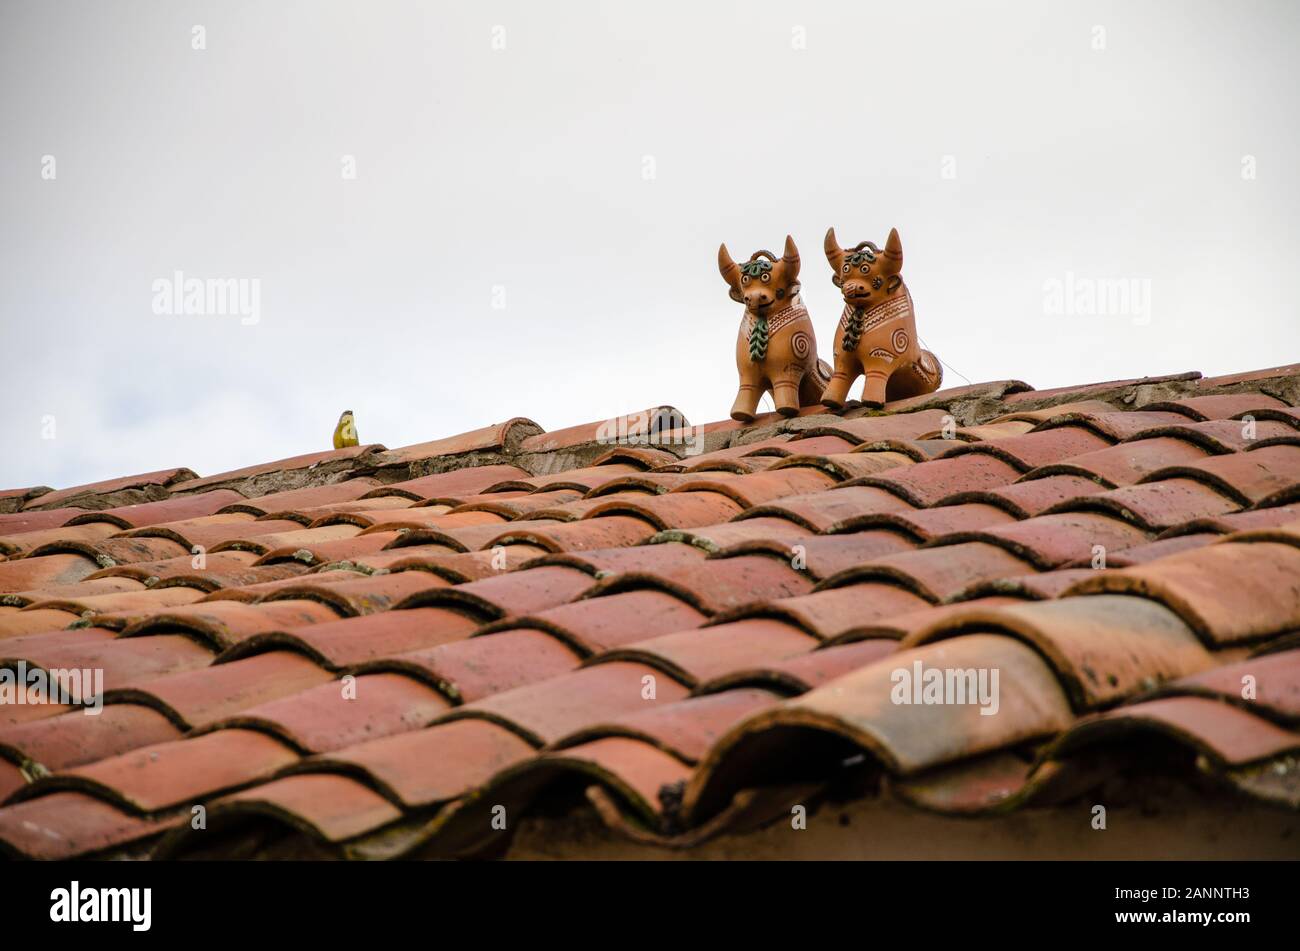 Dachsperlen in Pukara, Peru. Dachstuhlbullen sollen das Haus segnen und seinen Bewohnern Glück bringen. Stockfoto